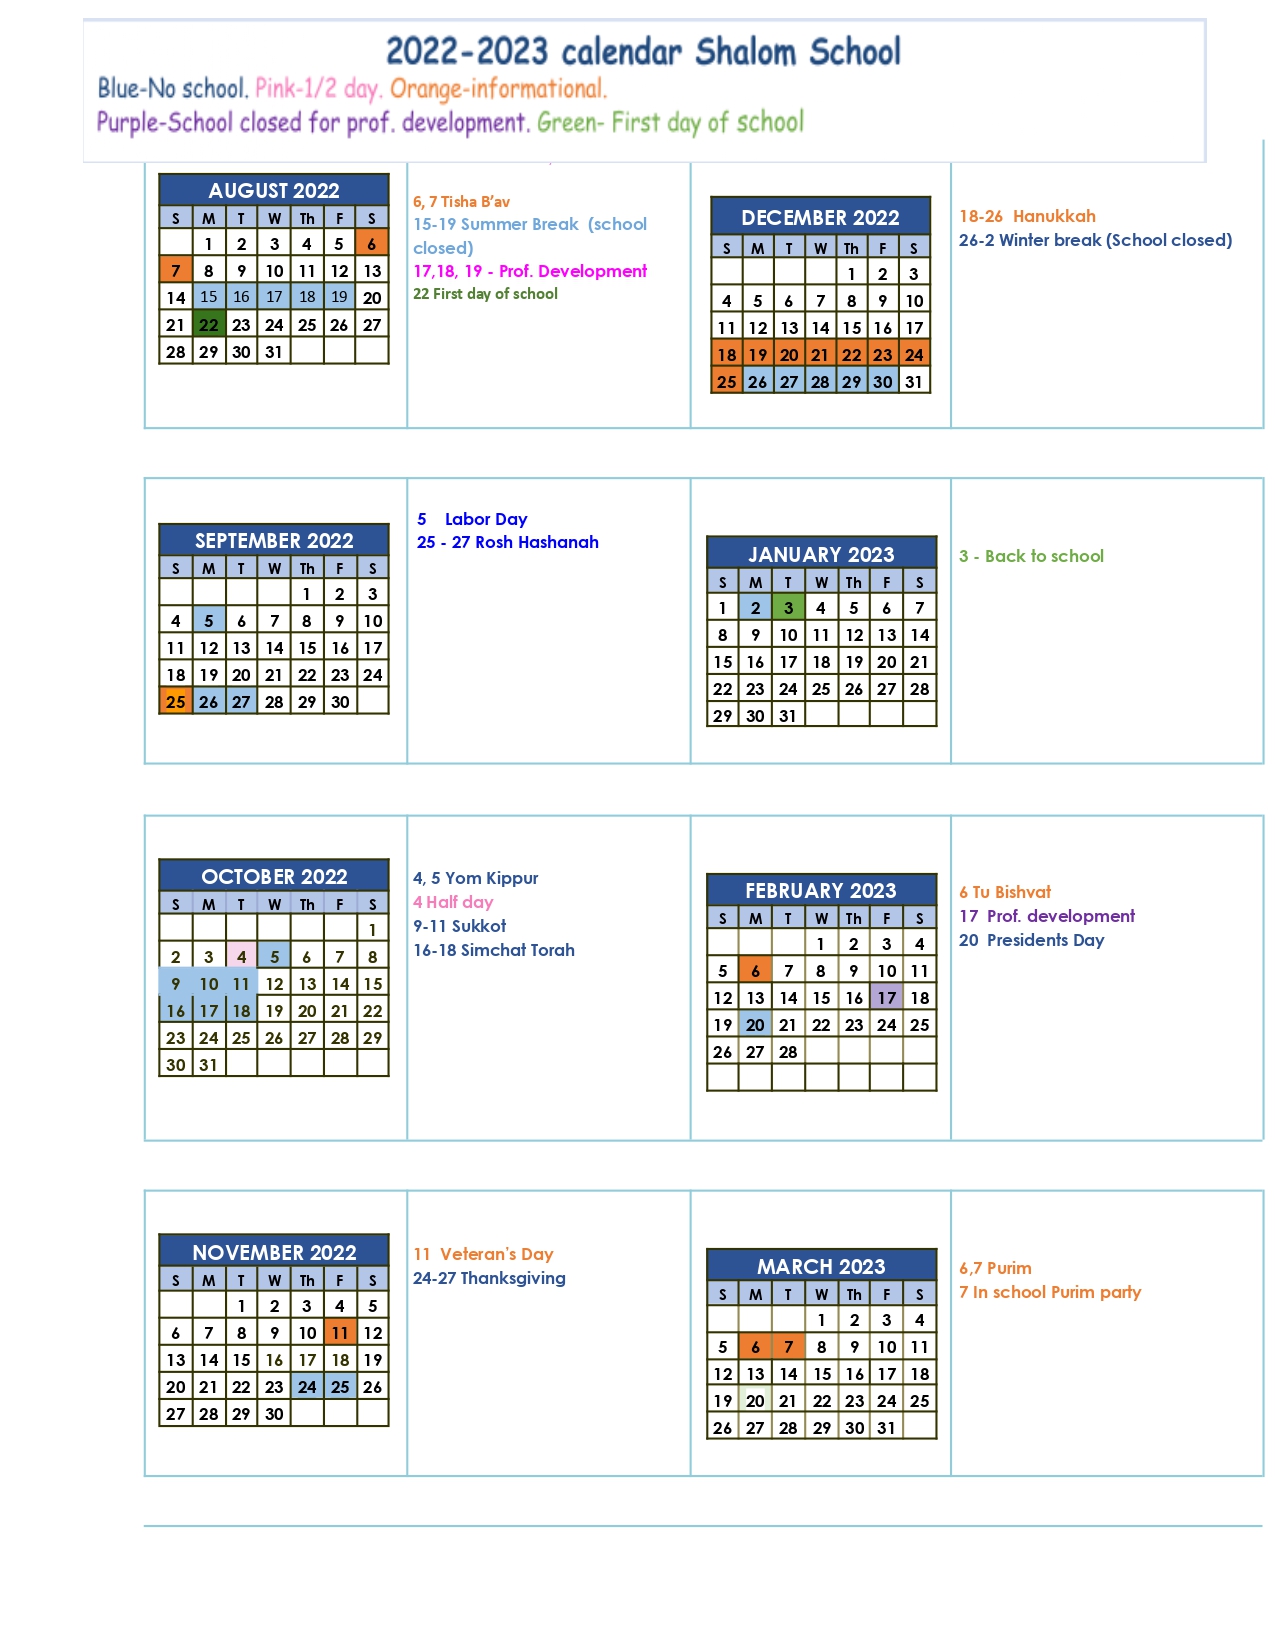 Calendar The Shalom School Website